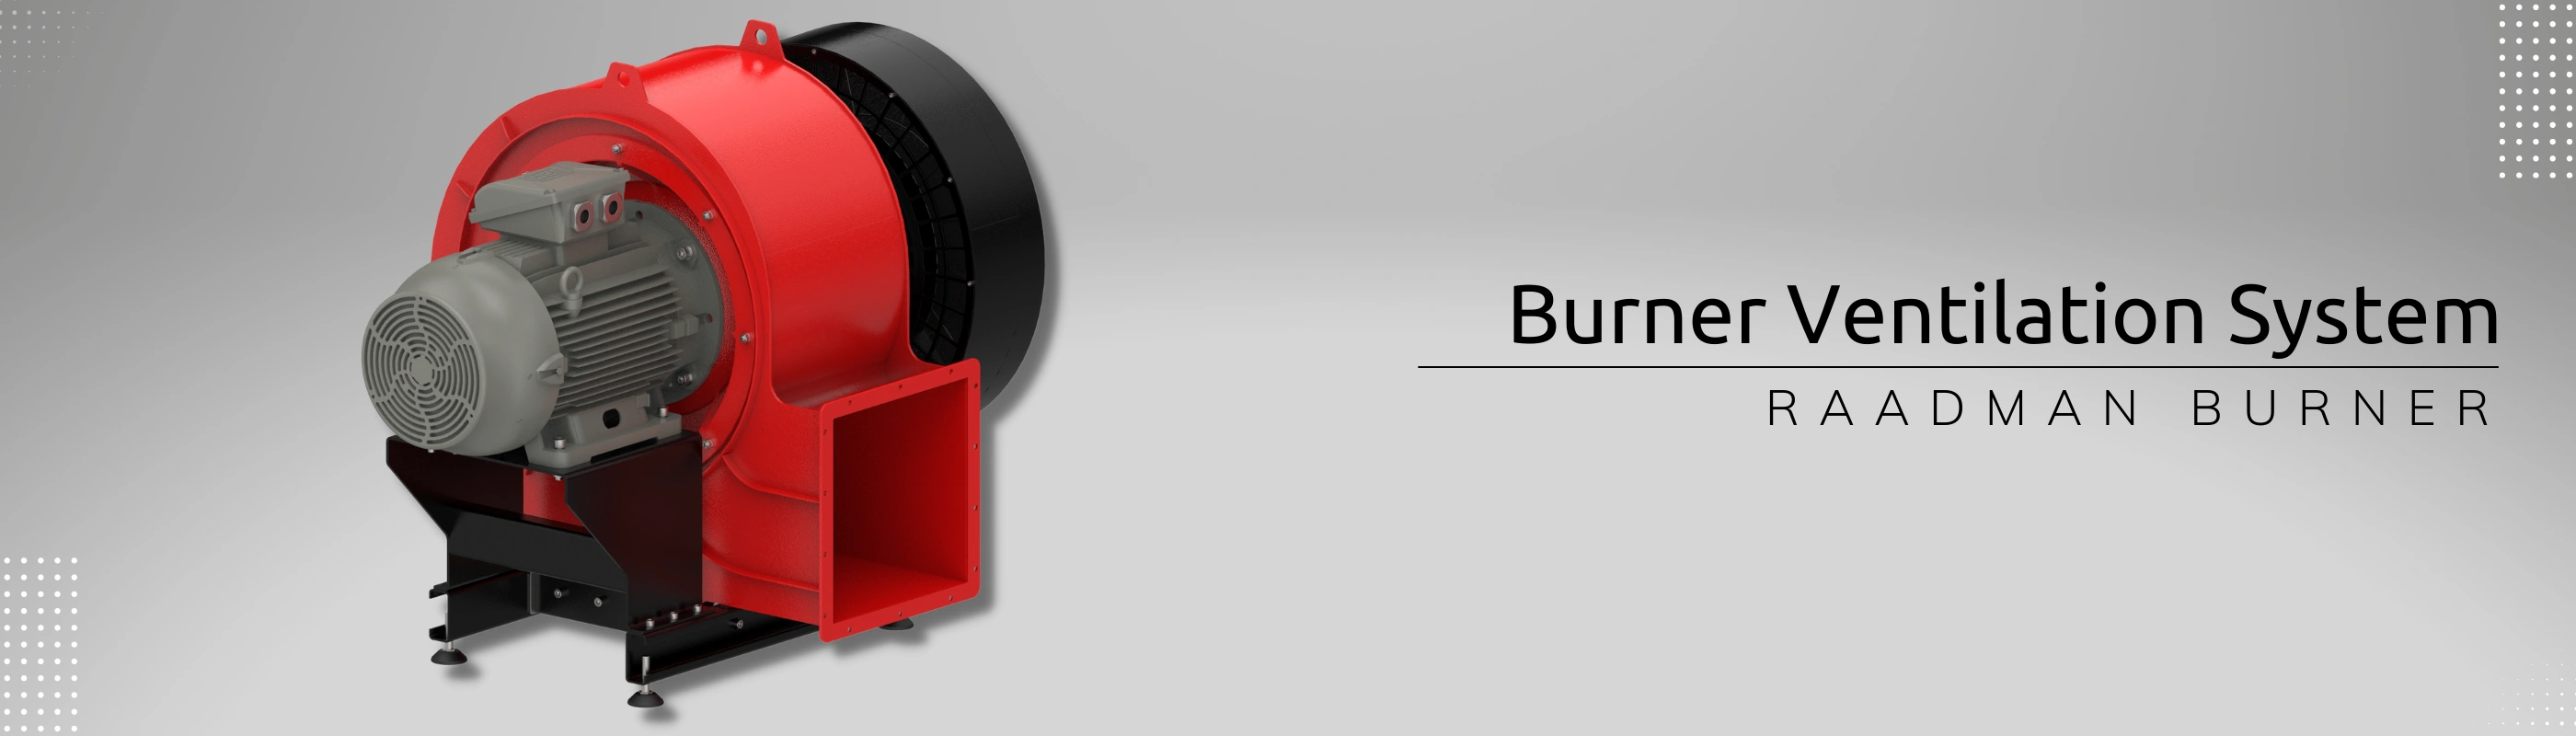 burner ventilation system